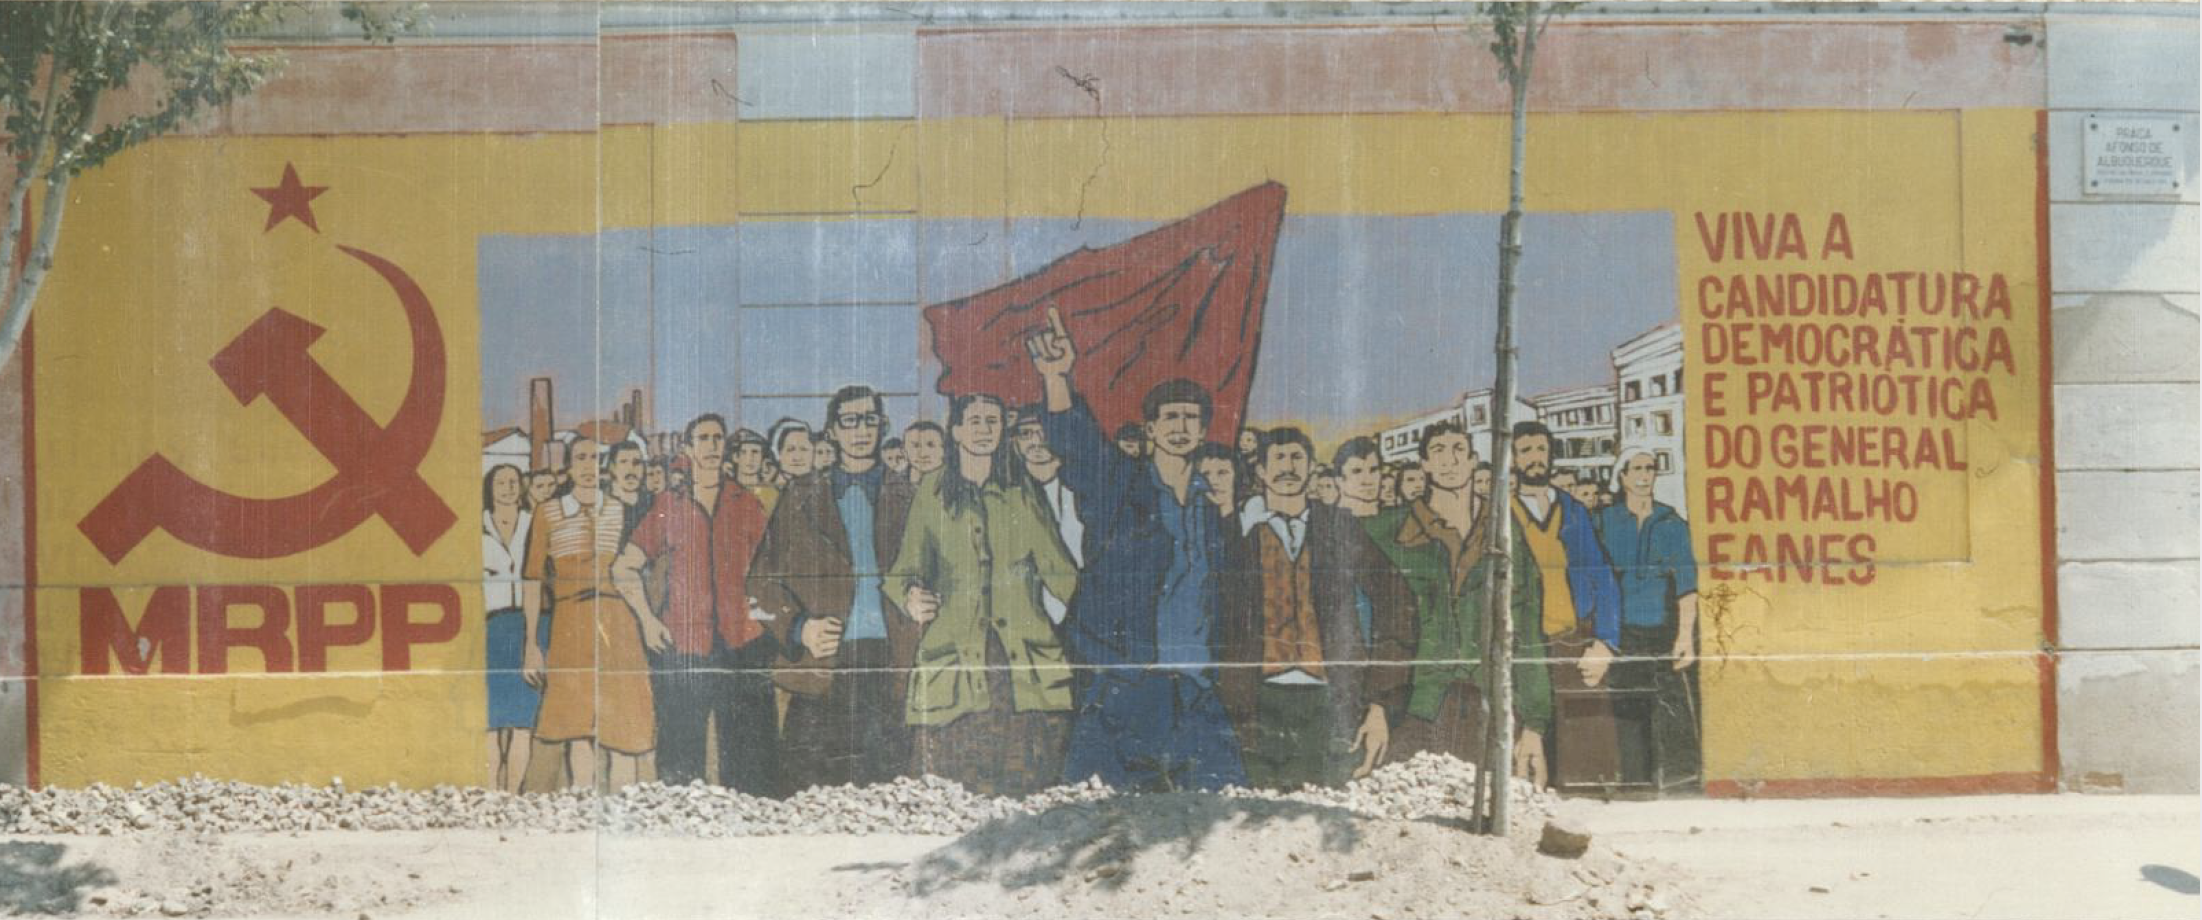 Mural do MRPP pela candidatura de Ramalho Eanes em Lisboa